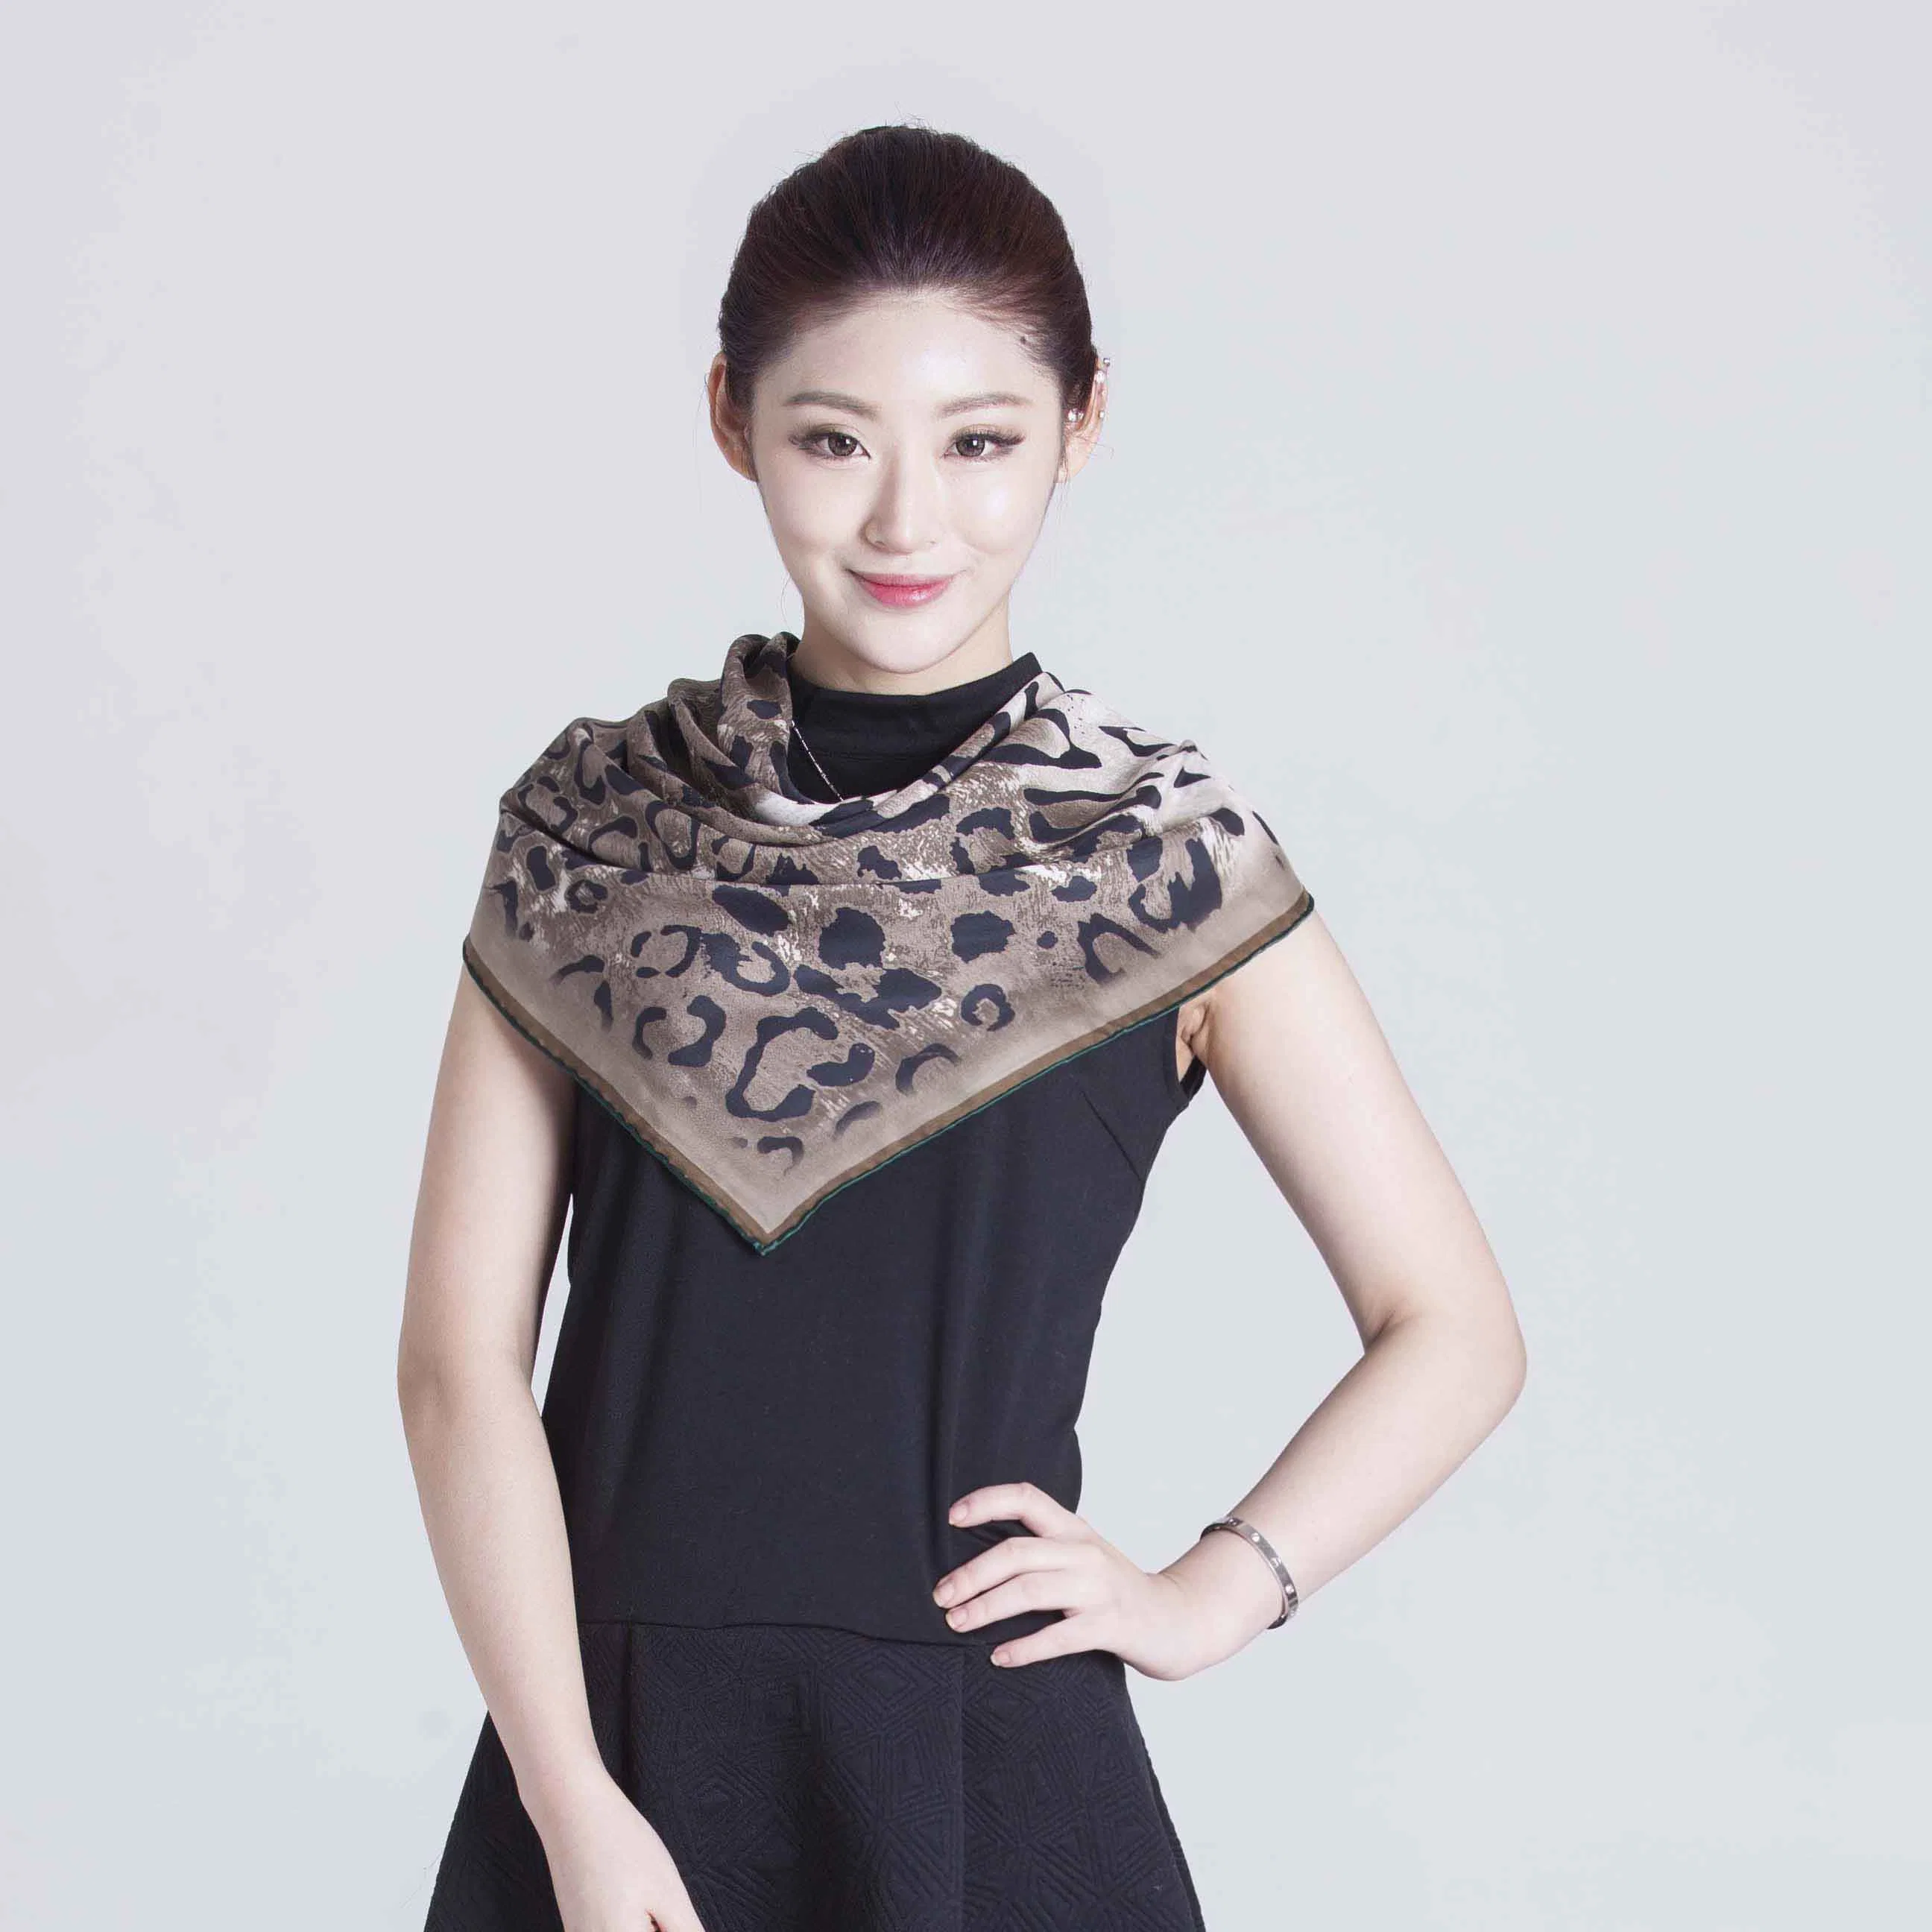 ملحقات ملابس وشاح الحرير Shawl للبيع المباشر في شنغهاي 2017 لـ الصيف والشتاء